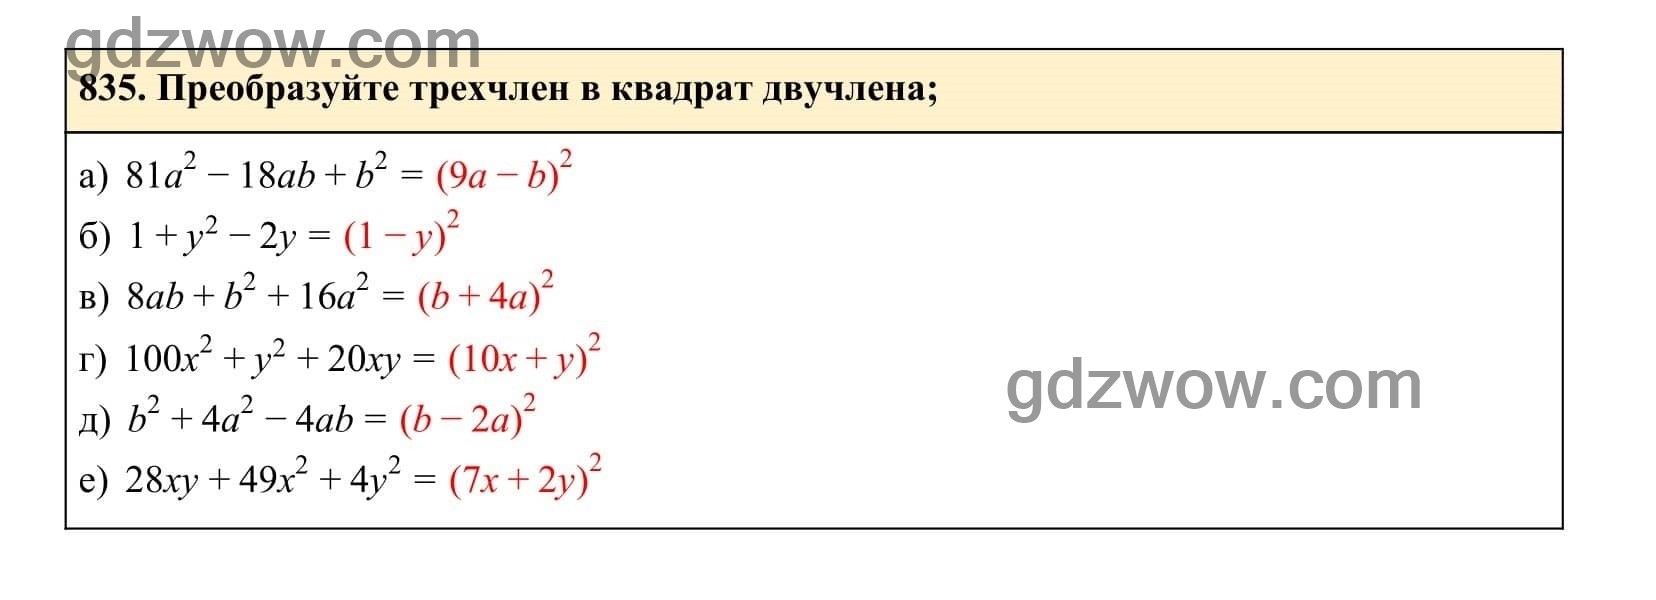 Упражнение 835 - ГДЗ по Алгебре 7 класс Учебник Макарычев (решебник) - GDZwow